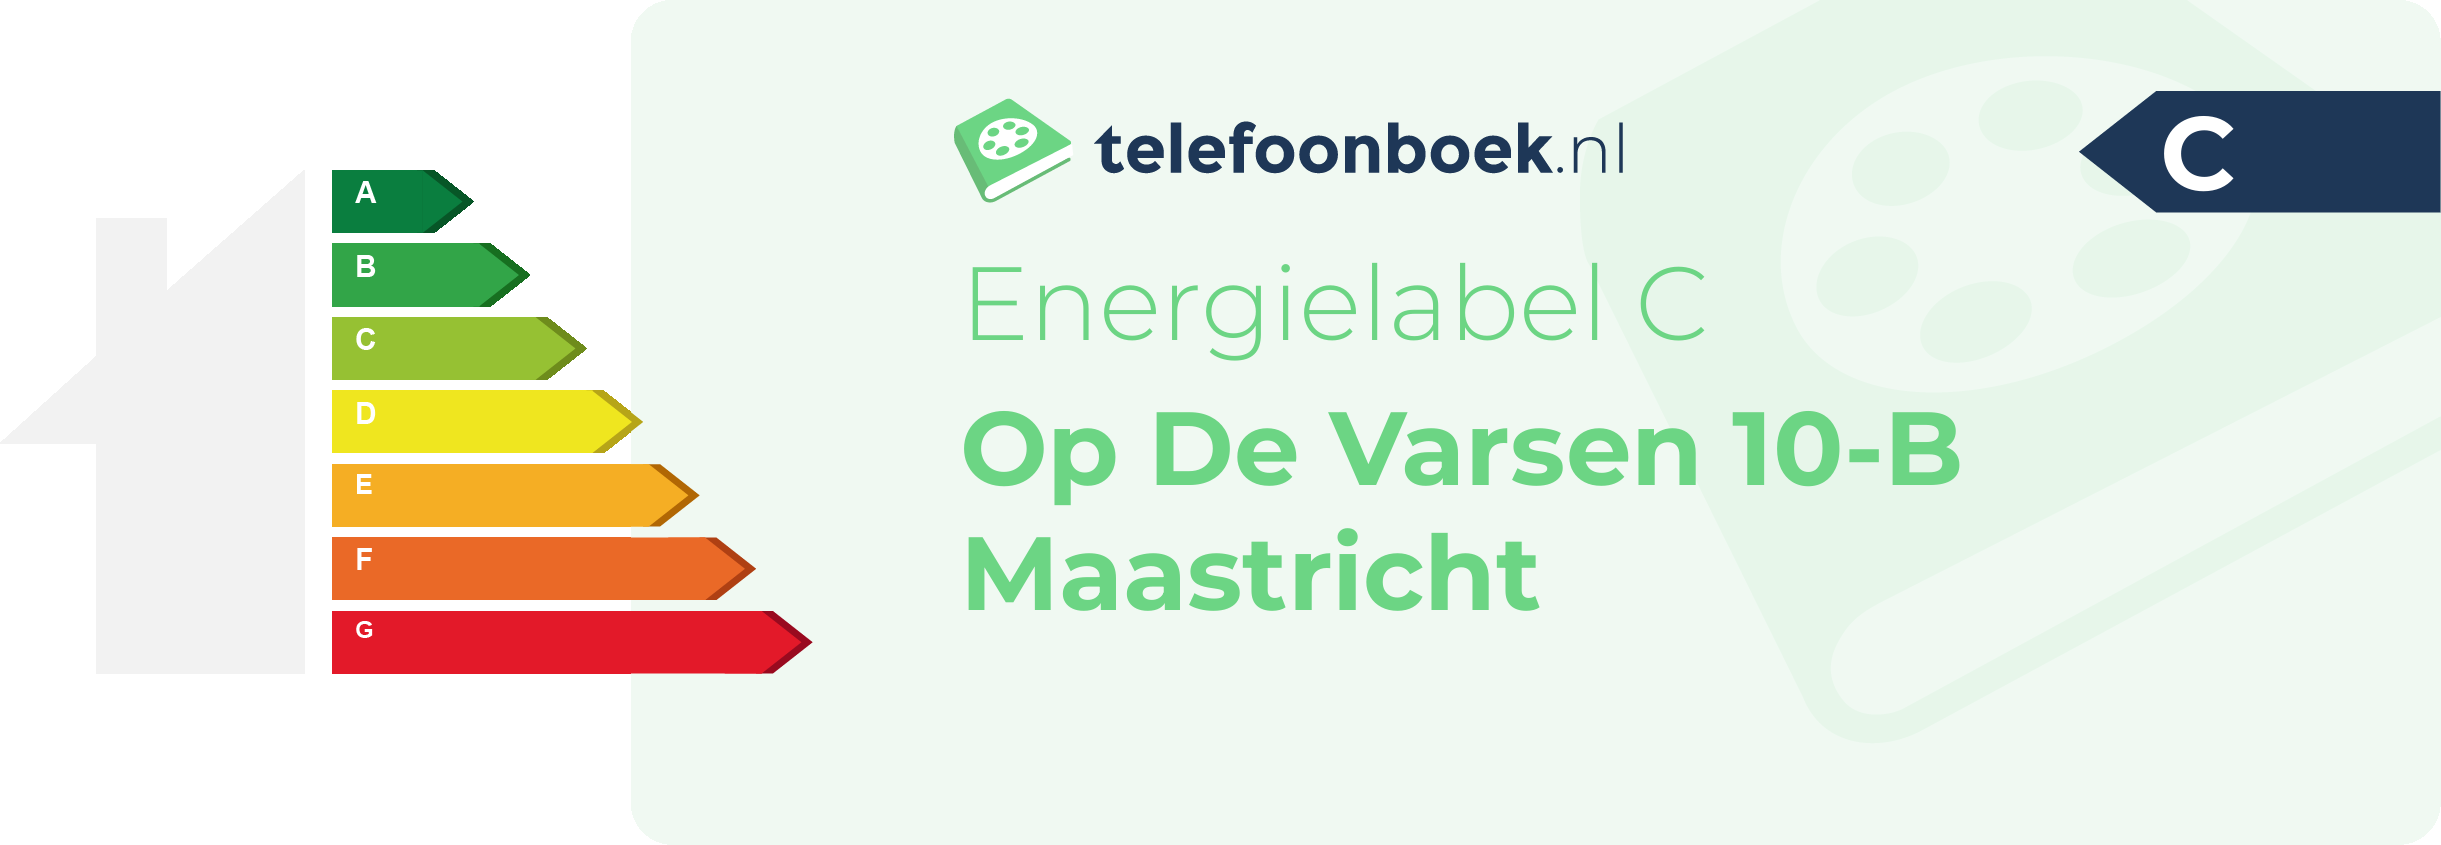 Energielabel Op De Varsen 10-B Maastricht